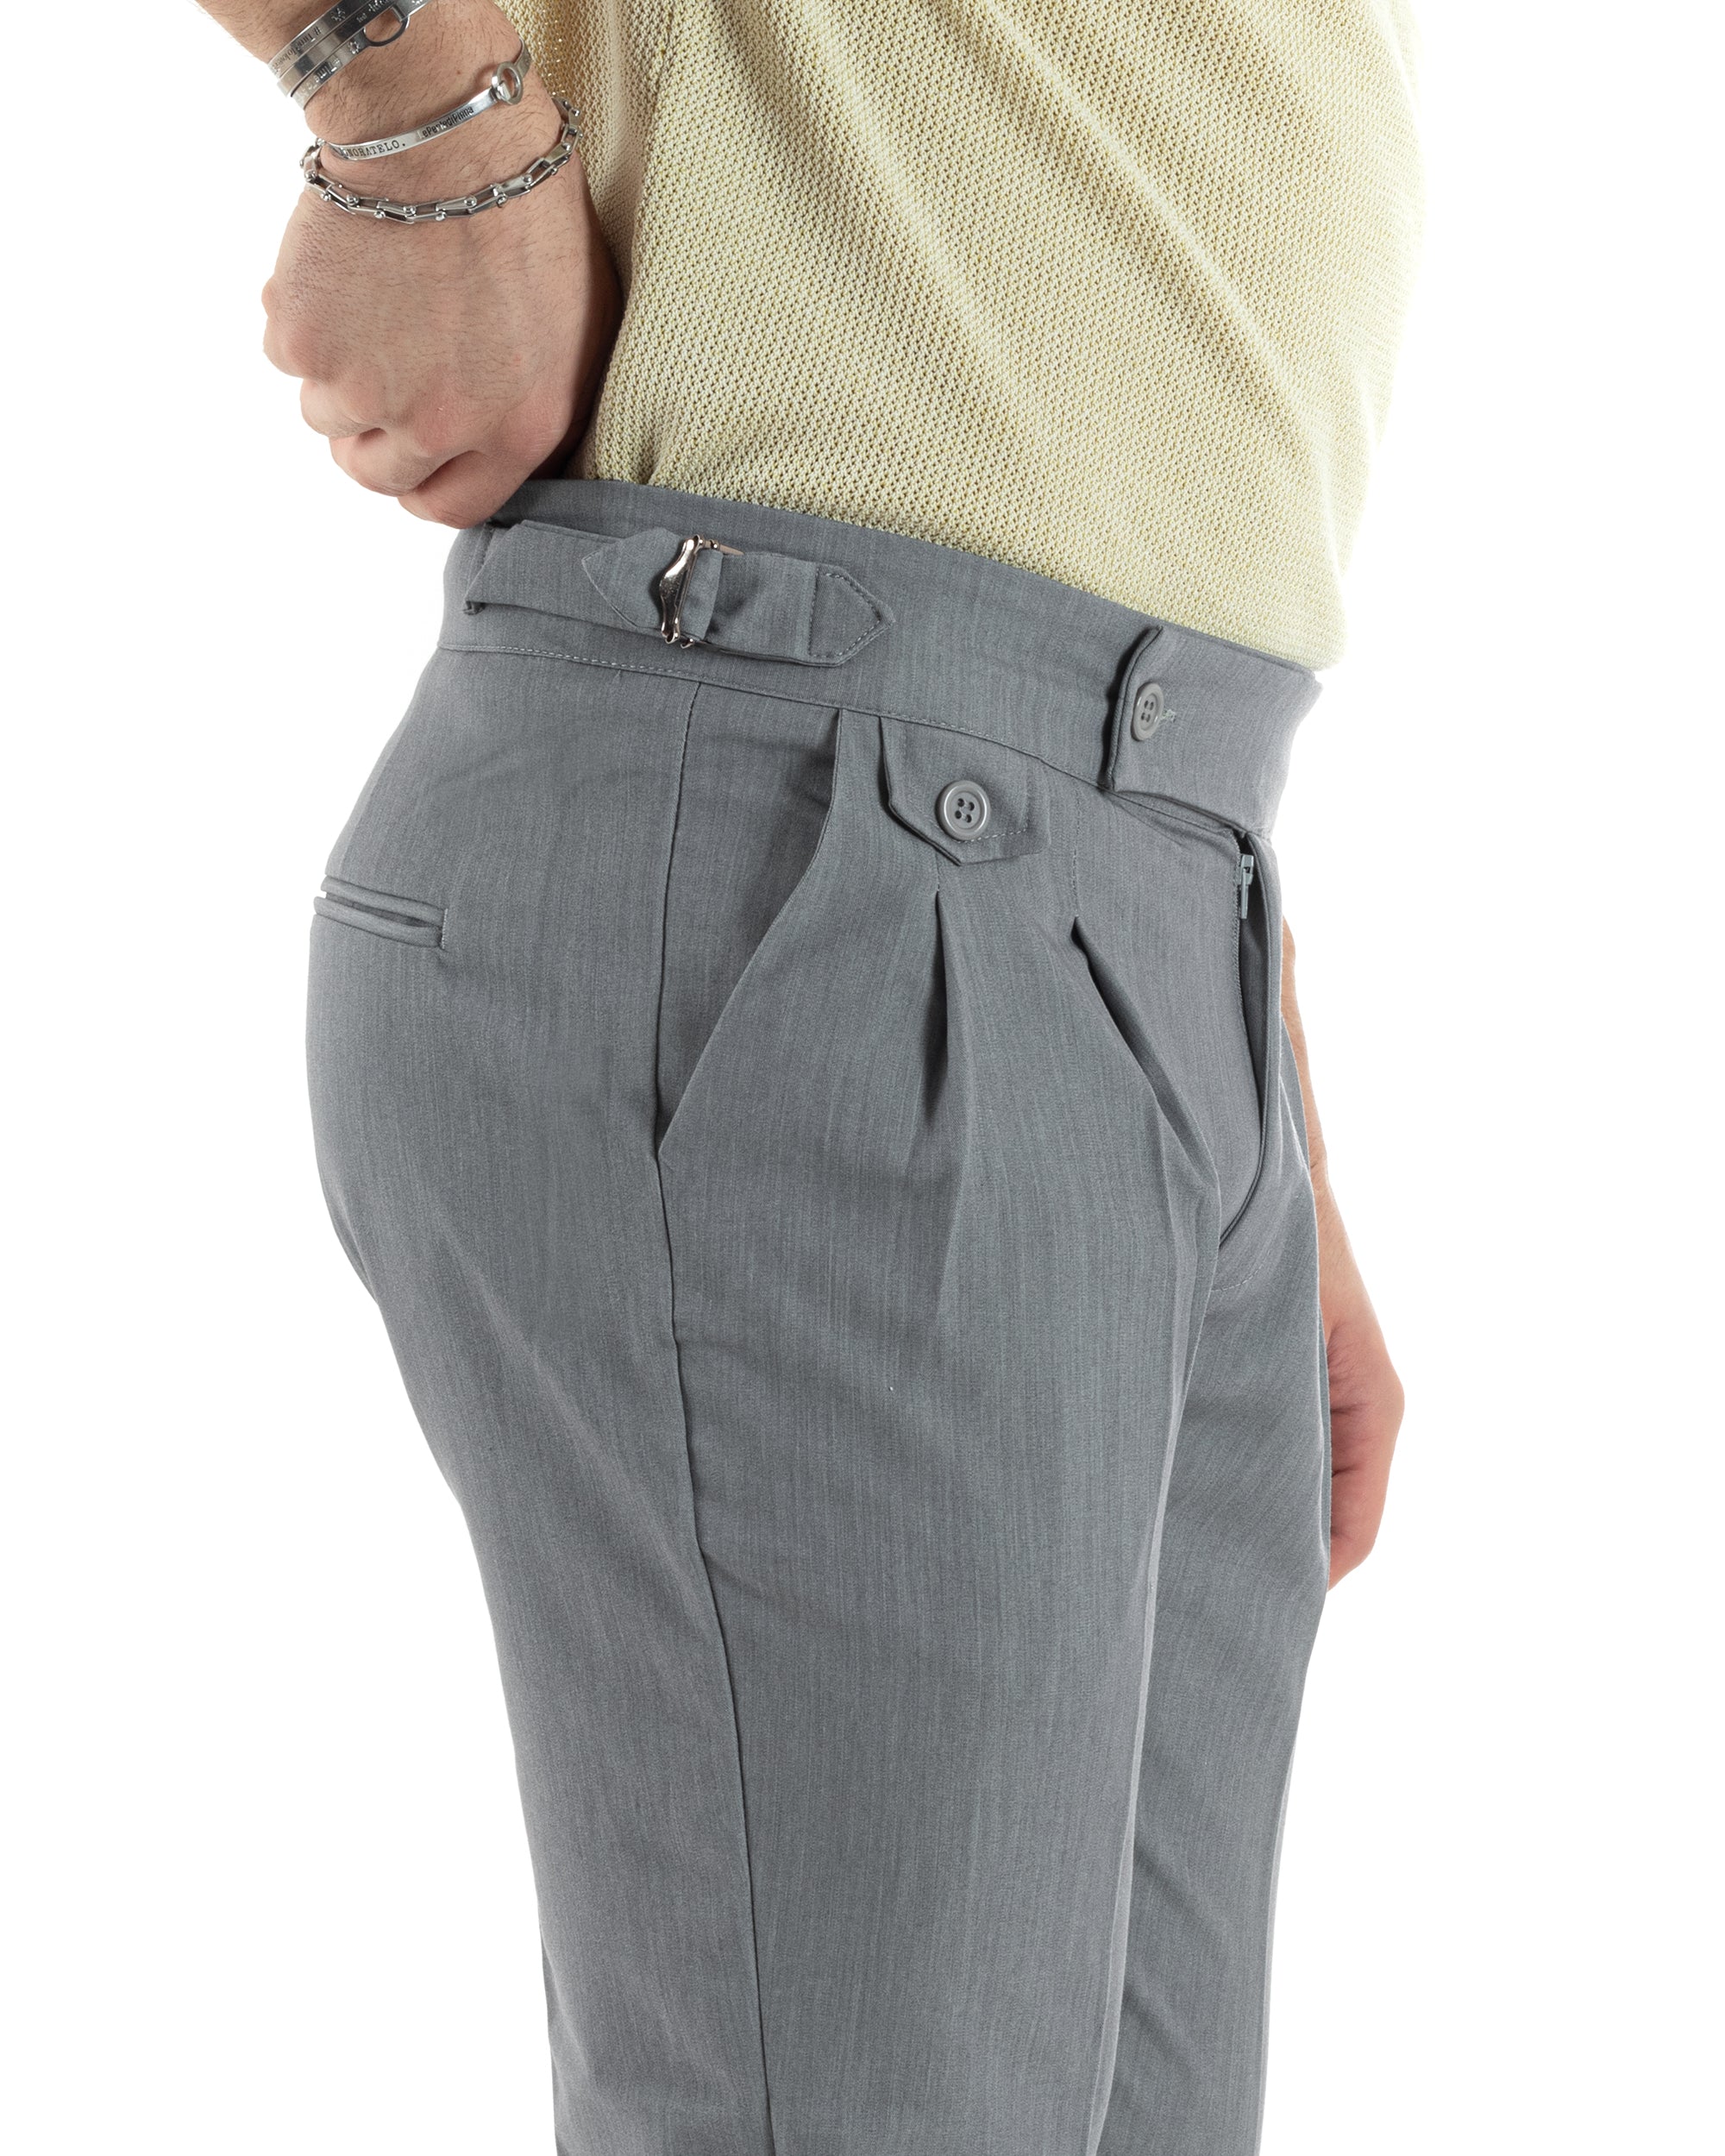 Pantaloni Uomo Tasca America Vita Alta Classico Pinces Abbottonatura Allungata Fibbia Casual Grigio GIOSAL-P6043A